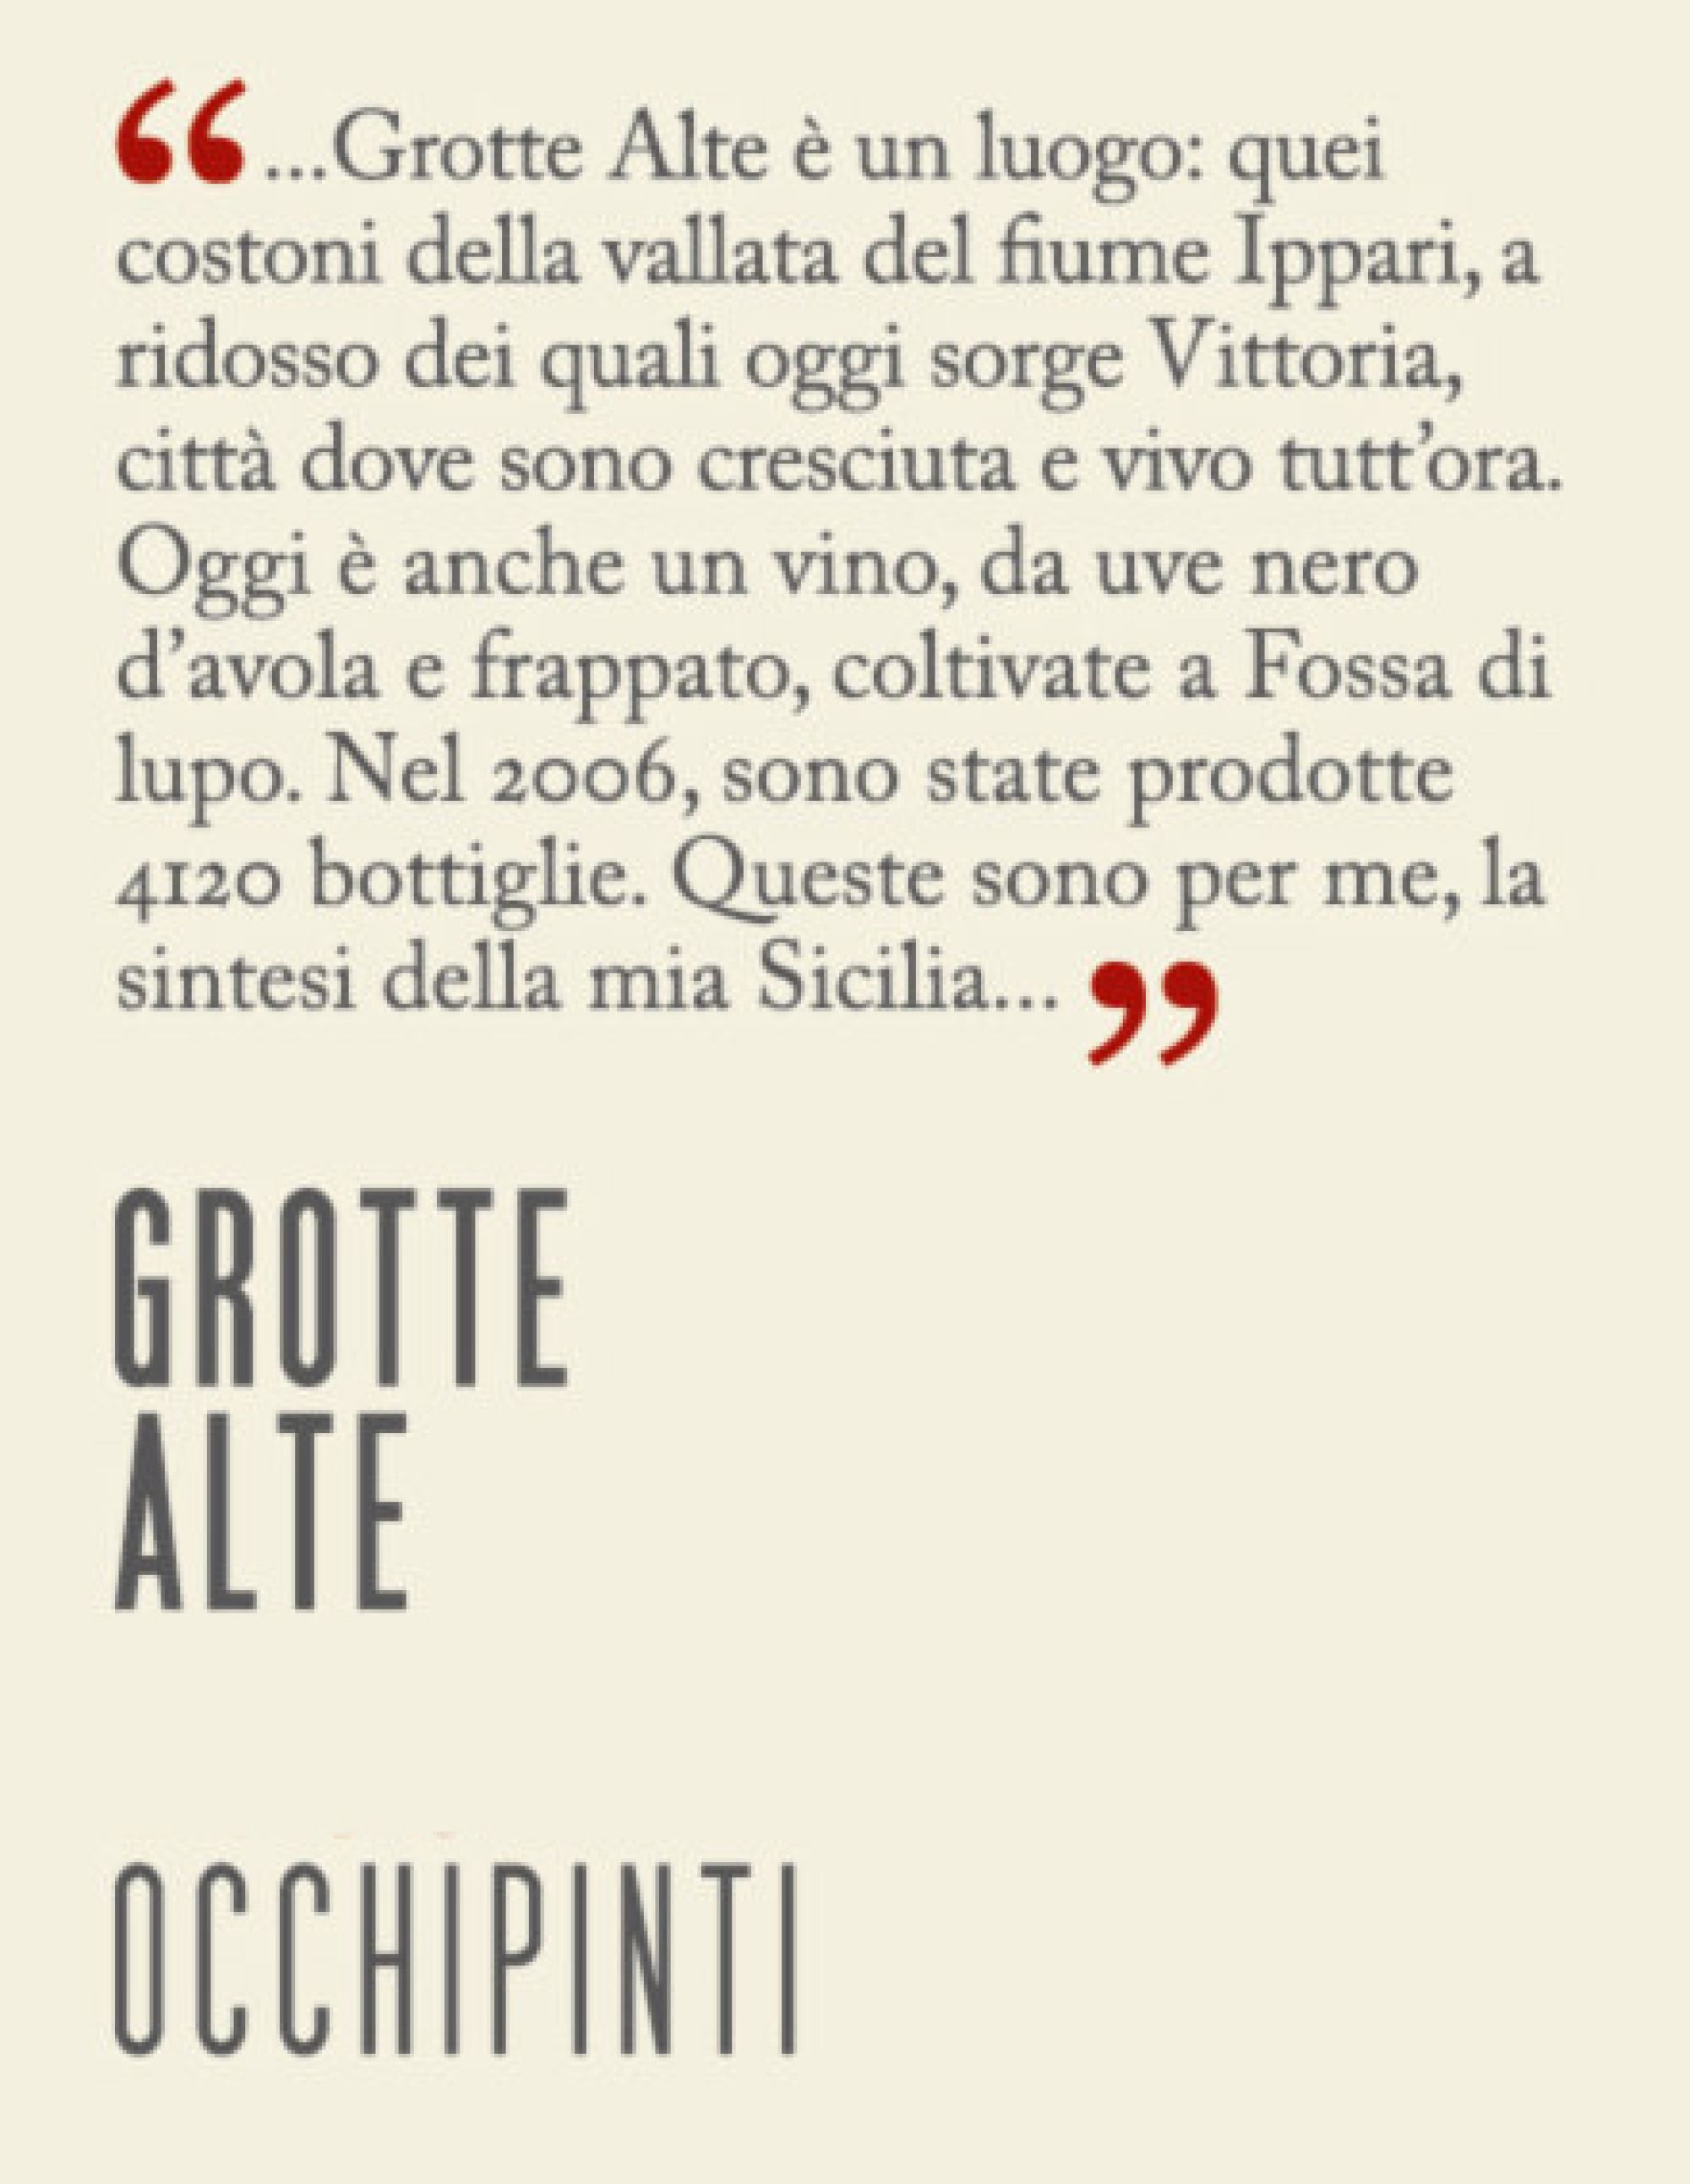 Occhipinti - SM Vino de Contrada Grillo Sicilia Bianco 2021 750ml (1 –  Depanneur Wines